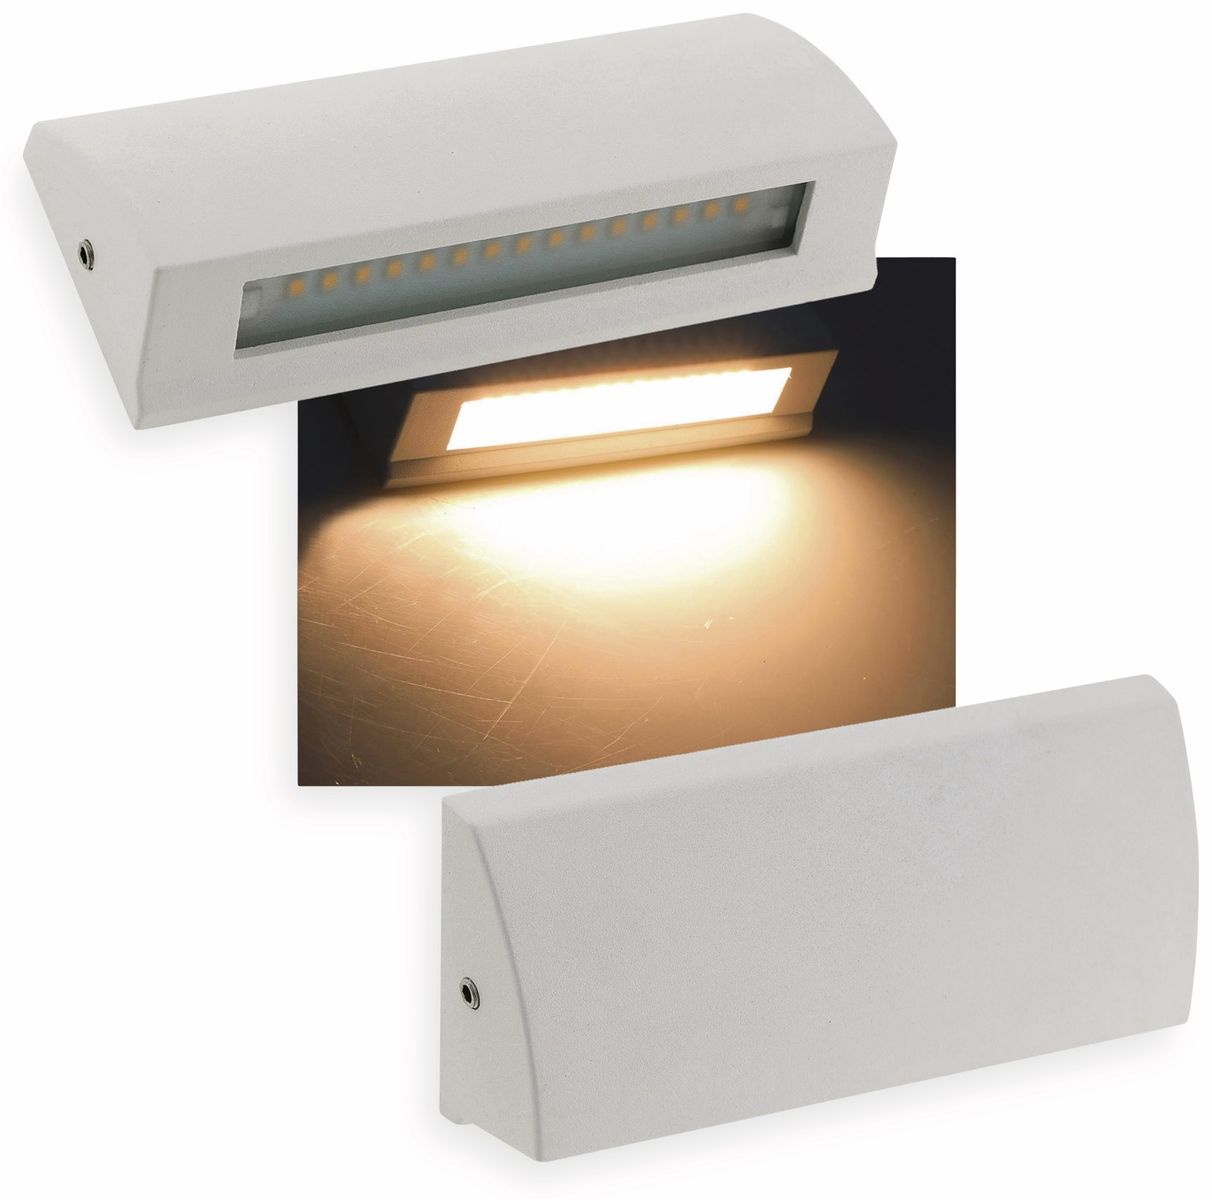 CHILITEC LED-Leuchte Barcas 6, EEK: G, 7 W, 340 lm, 3000K, IP54, weiß von ChiliTec